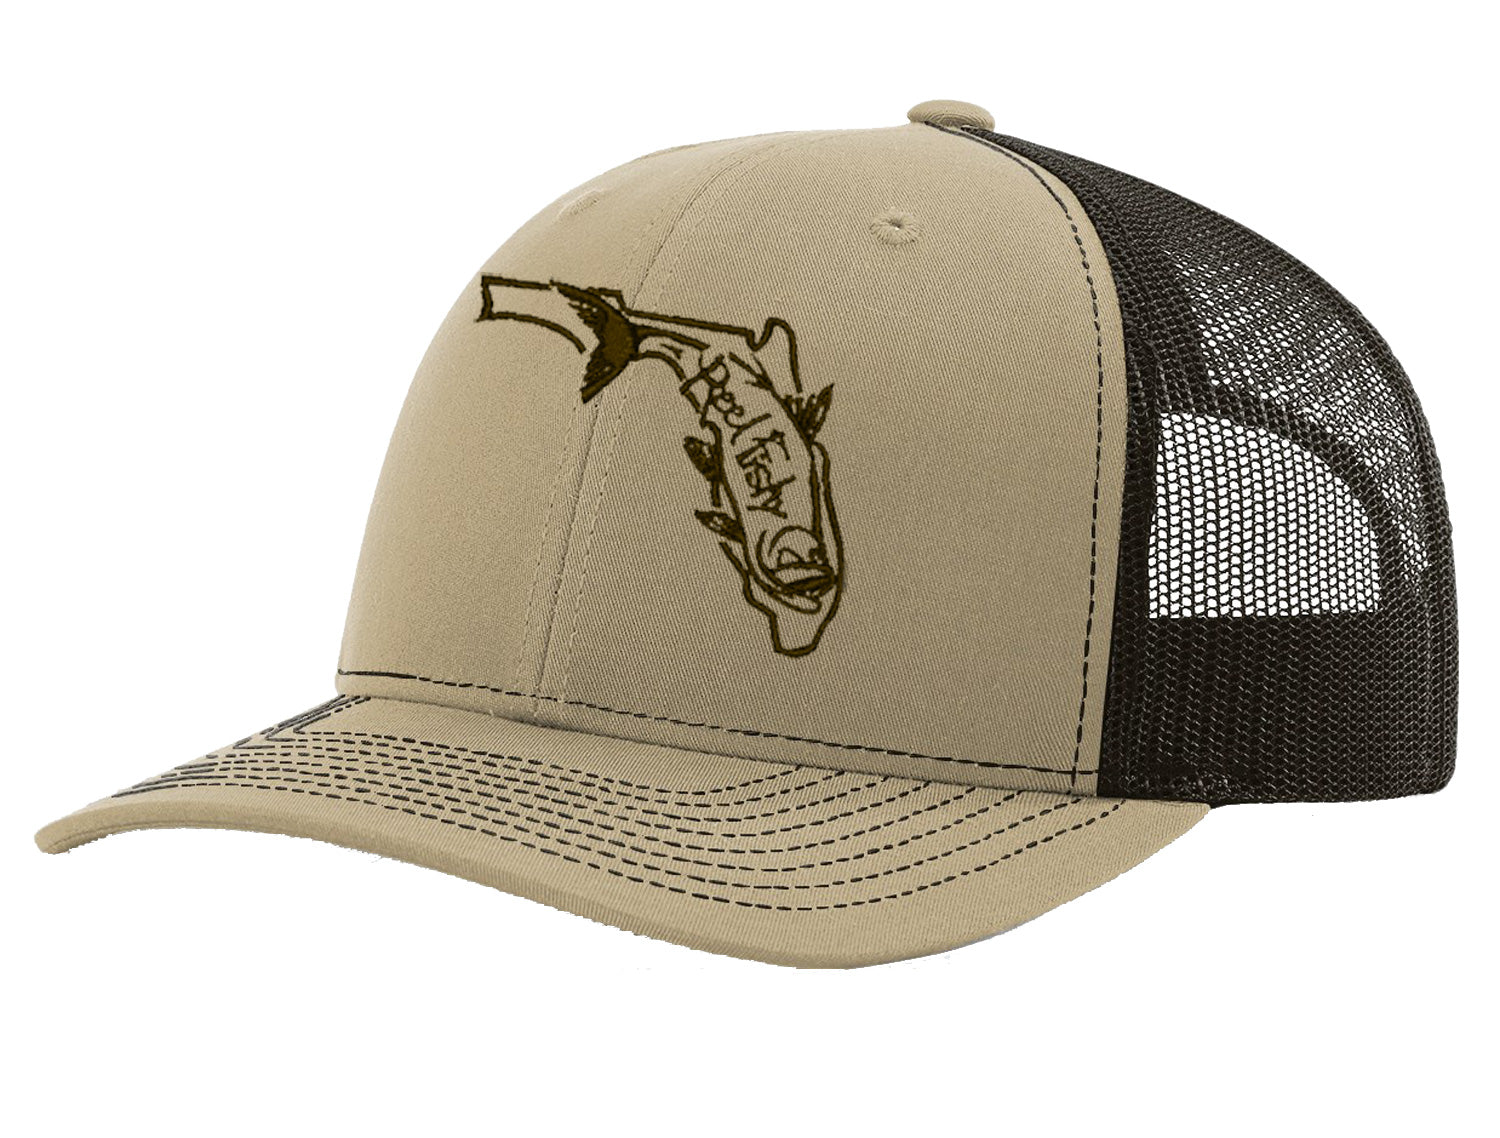 Tarpon Fishing Trucker Hat, Florida Logo Snapback Trucker Cap, Fishing Hat Khaki w/Brown Logo